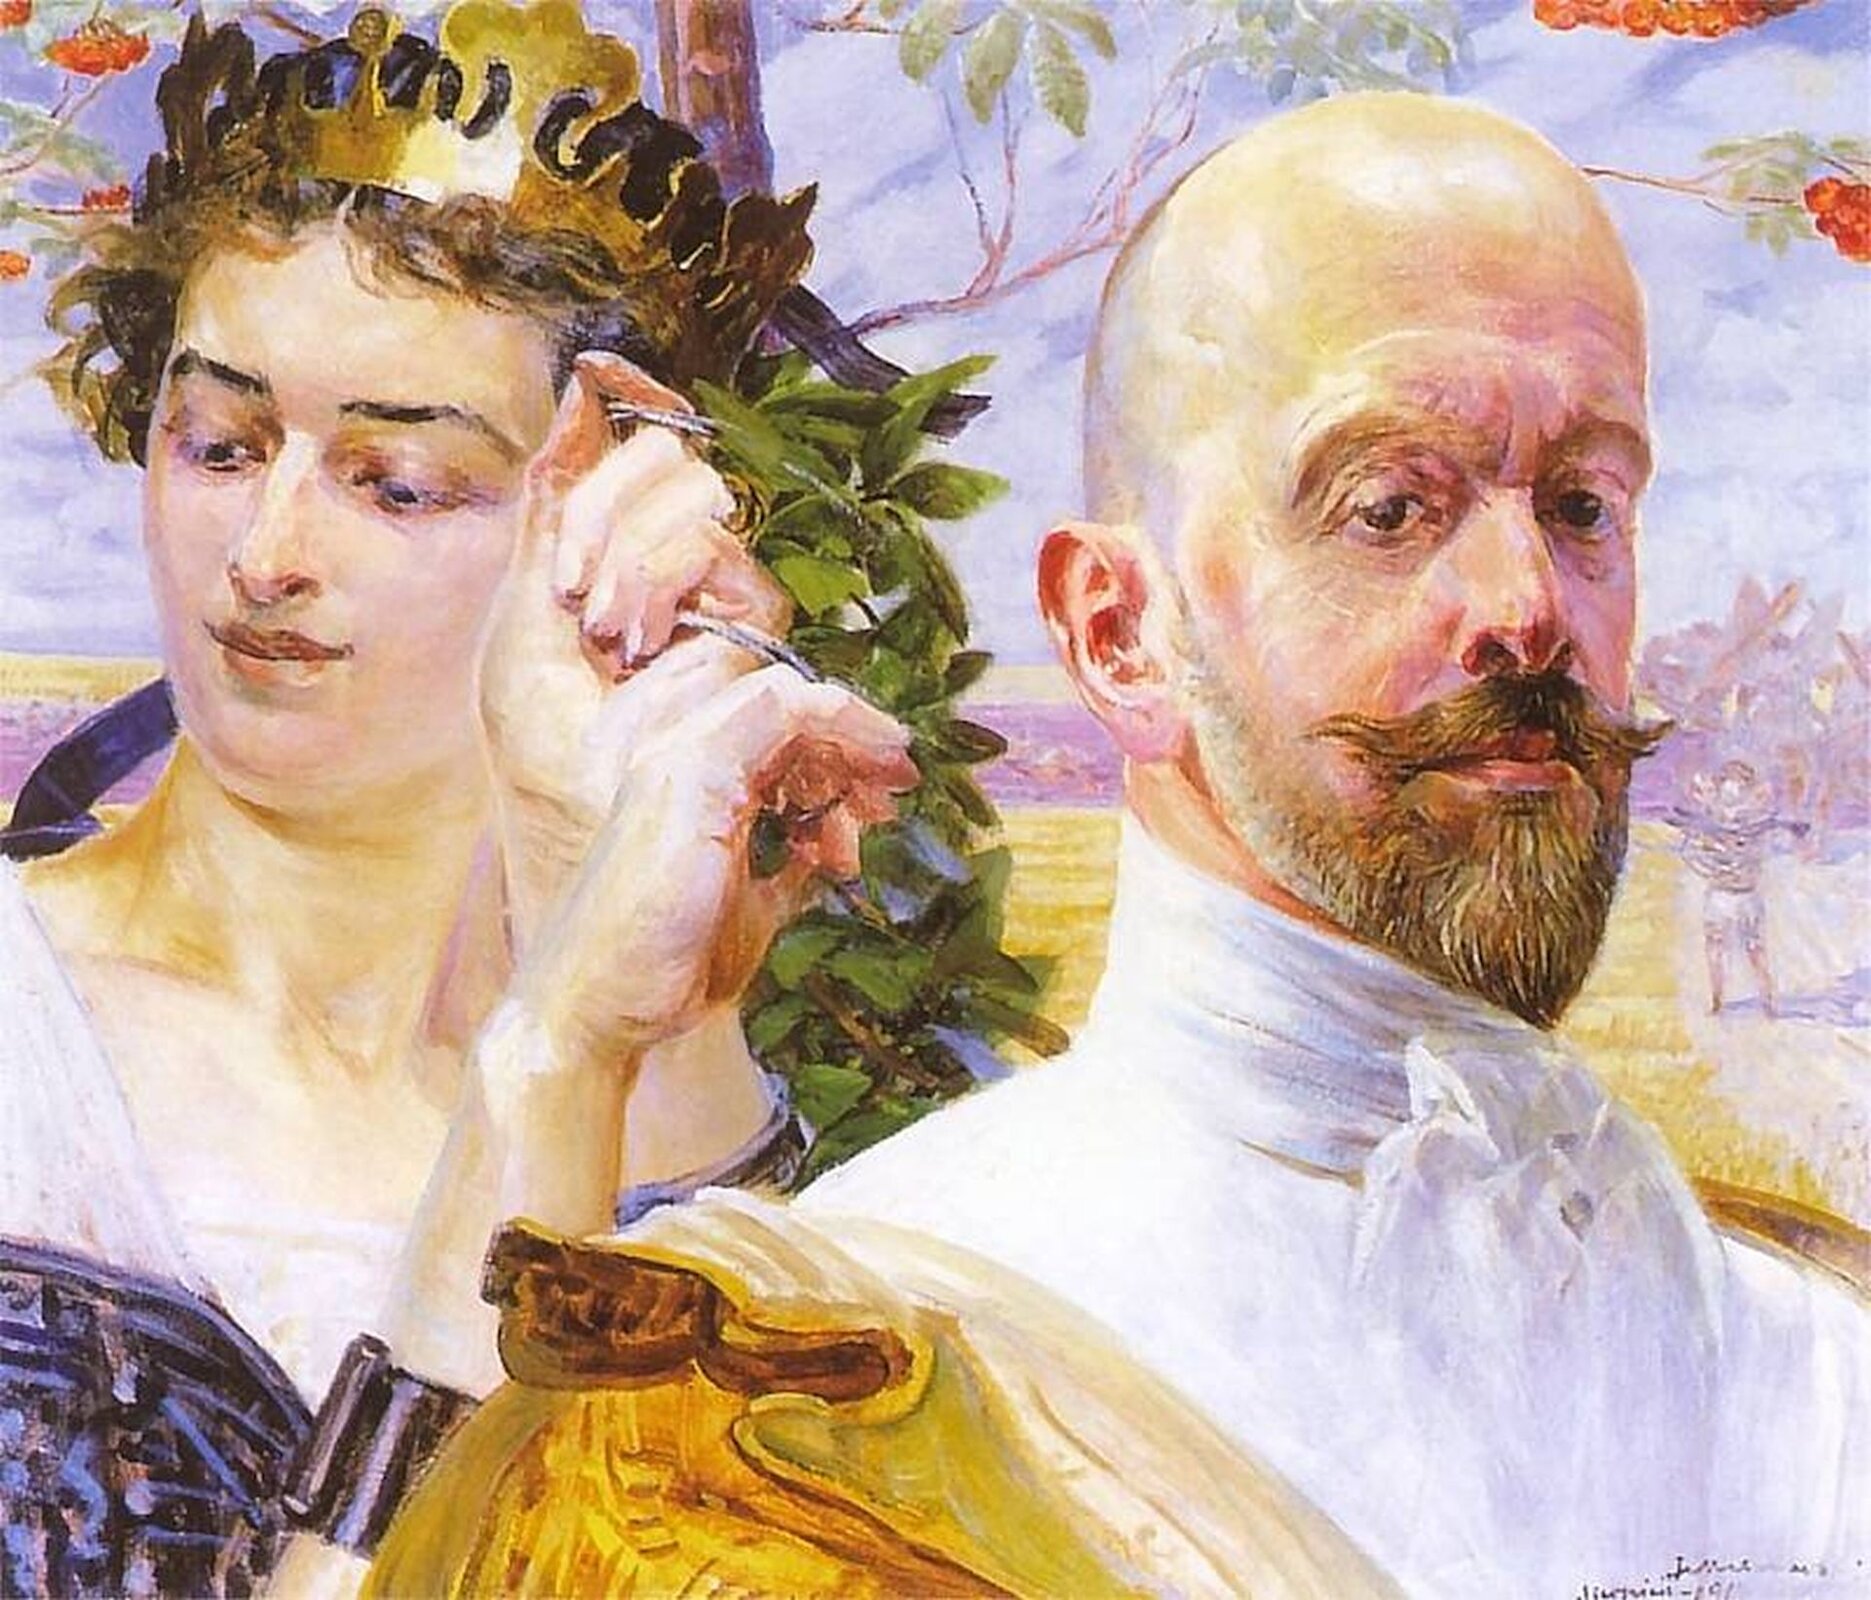 Ilustracja przedstawia obraz  „Autoportret z Polonią”, autorstwa Jacka Malczewskiego. Obraz ukazuje portret mężczyzny oraz kobiety. Kobieta na głowie ma złotą koronę. 